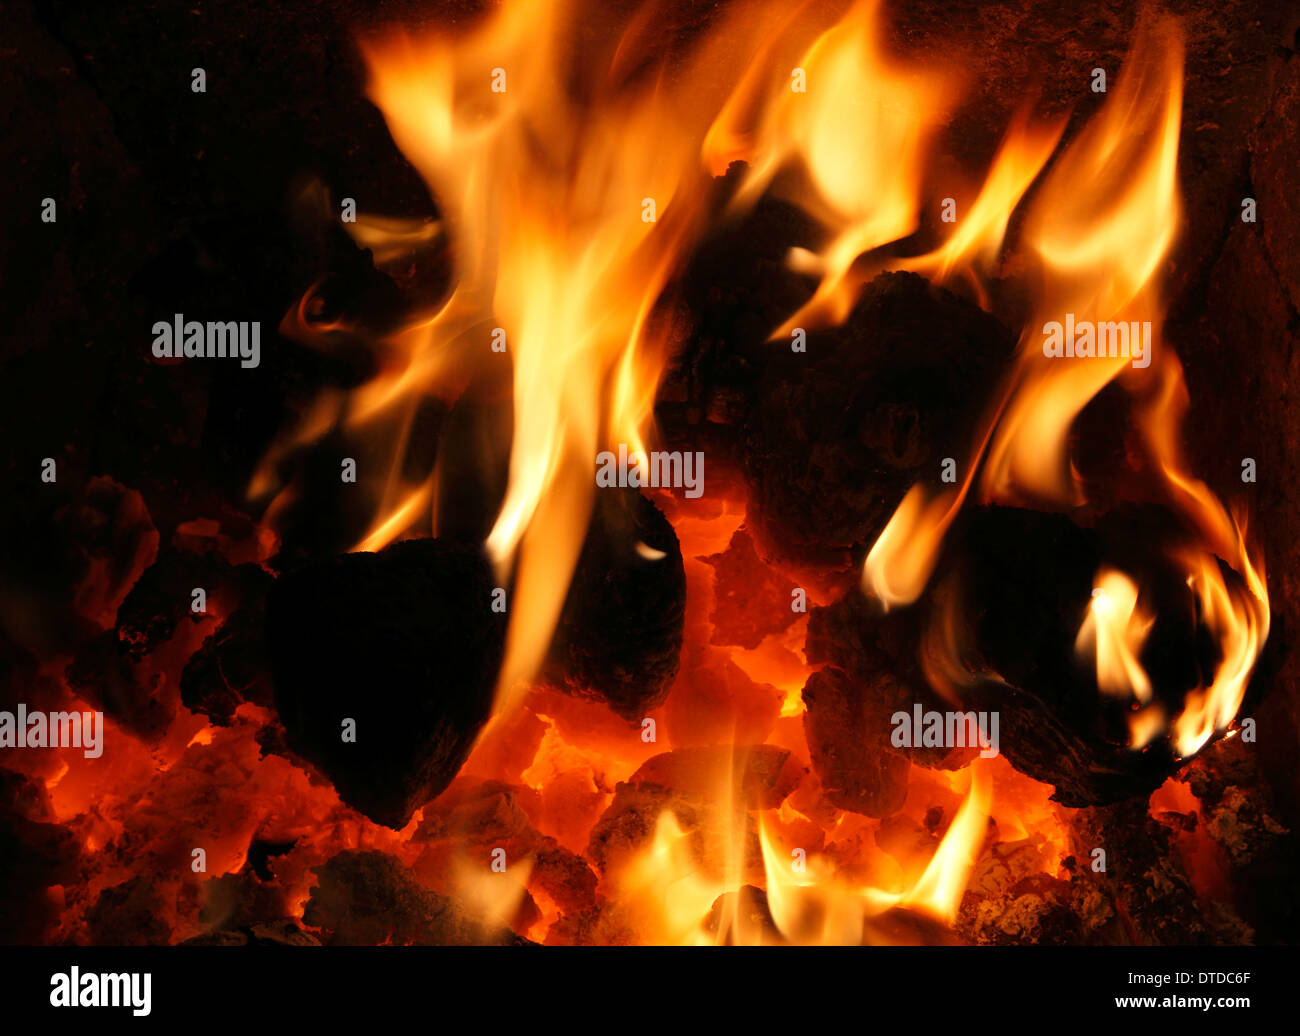 Il combustibile solido, carbone nazionale Fire, bruciando, fiamme, fiamme, focolare, fireside, hea,t energia, potenza, incendi, calore, caldo, home, incendi Foto Stock